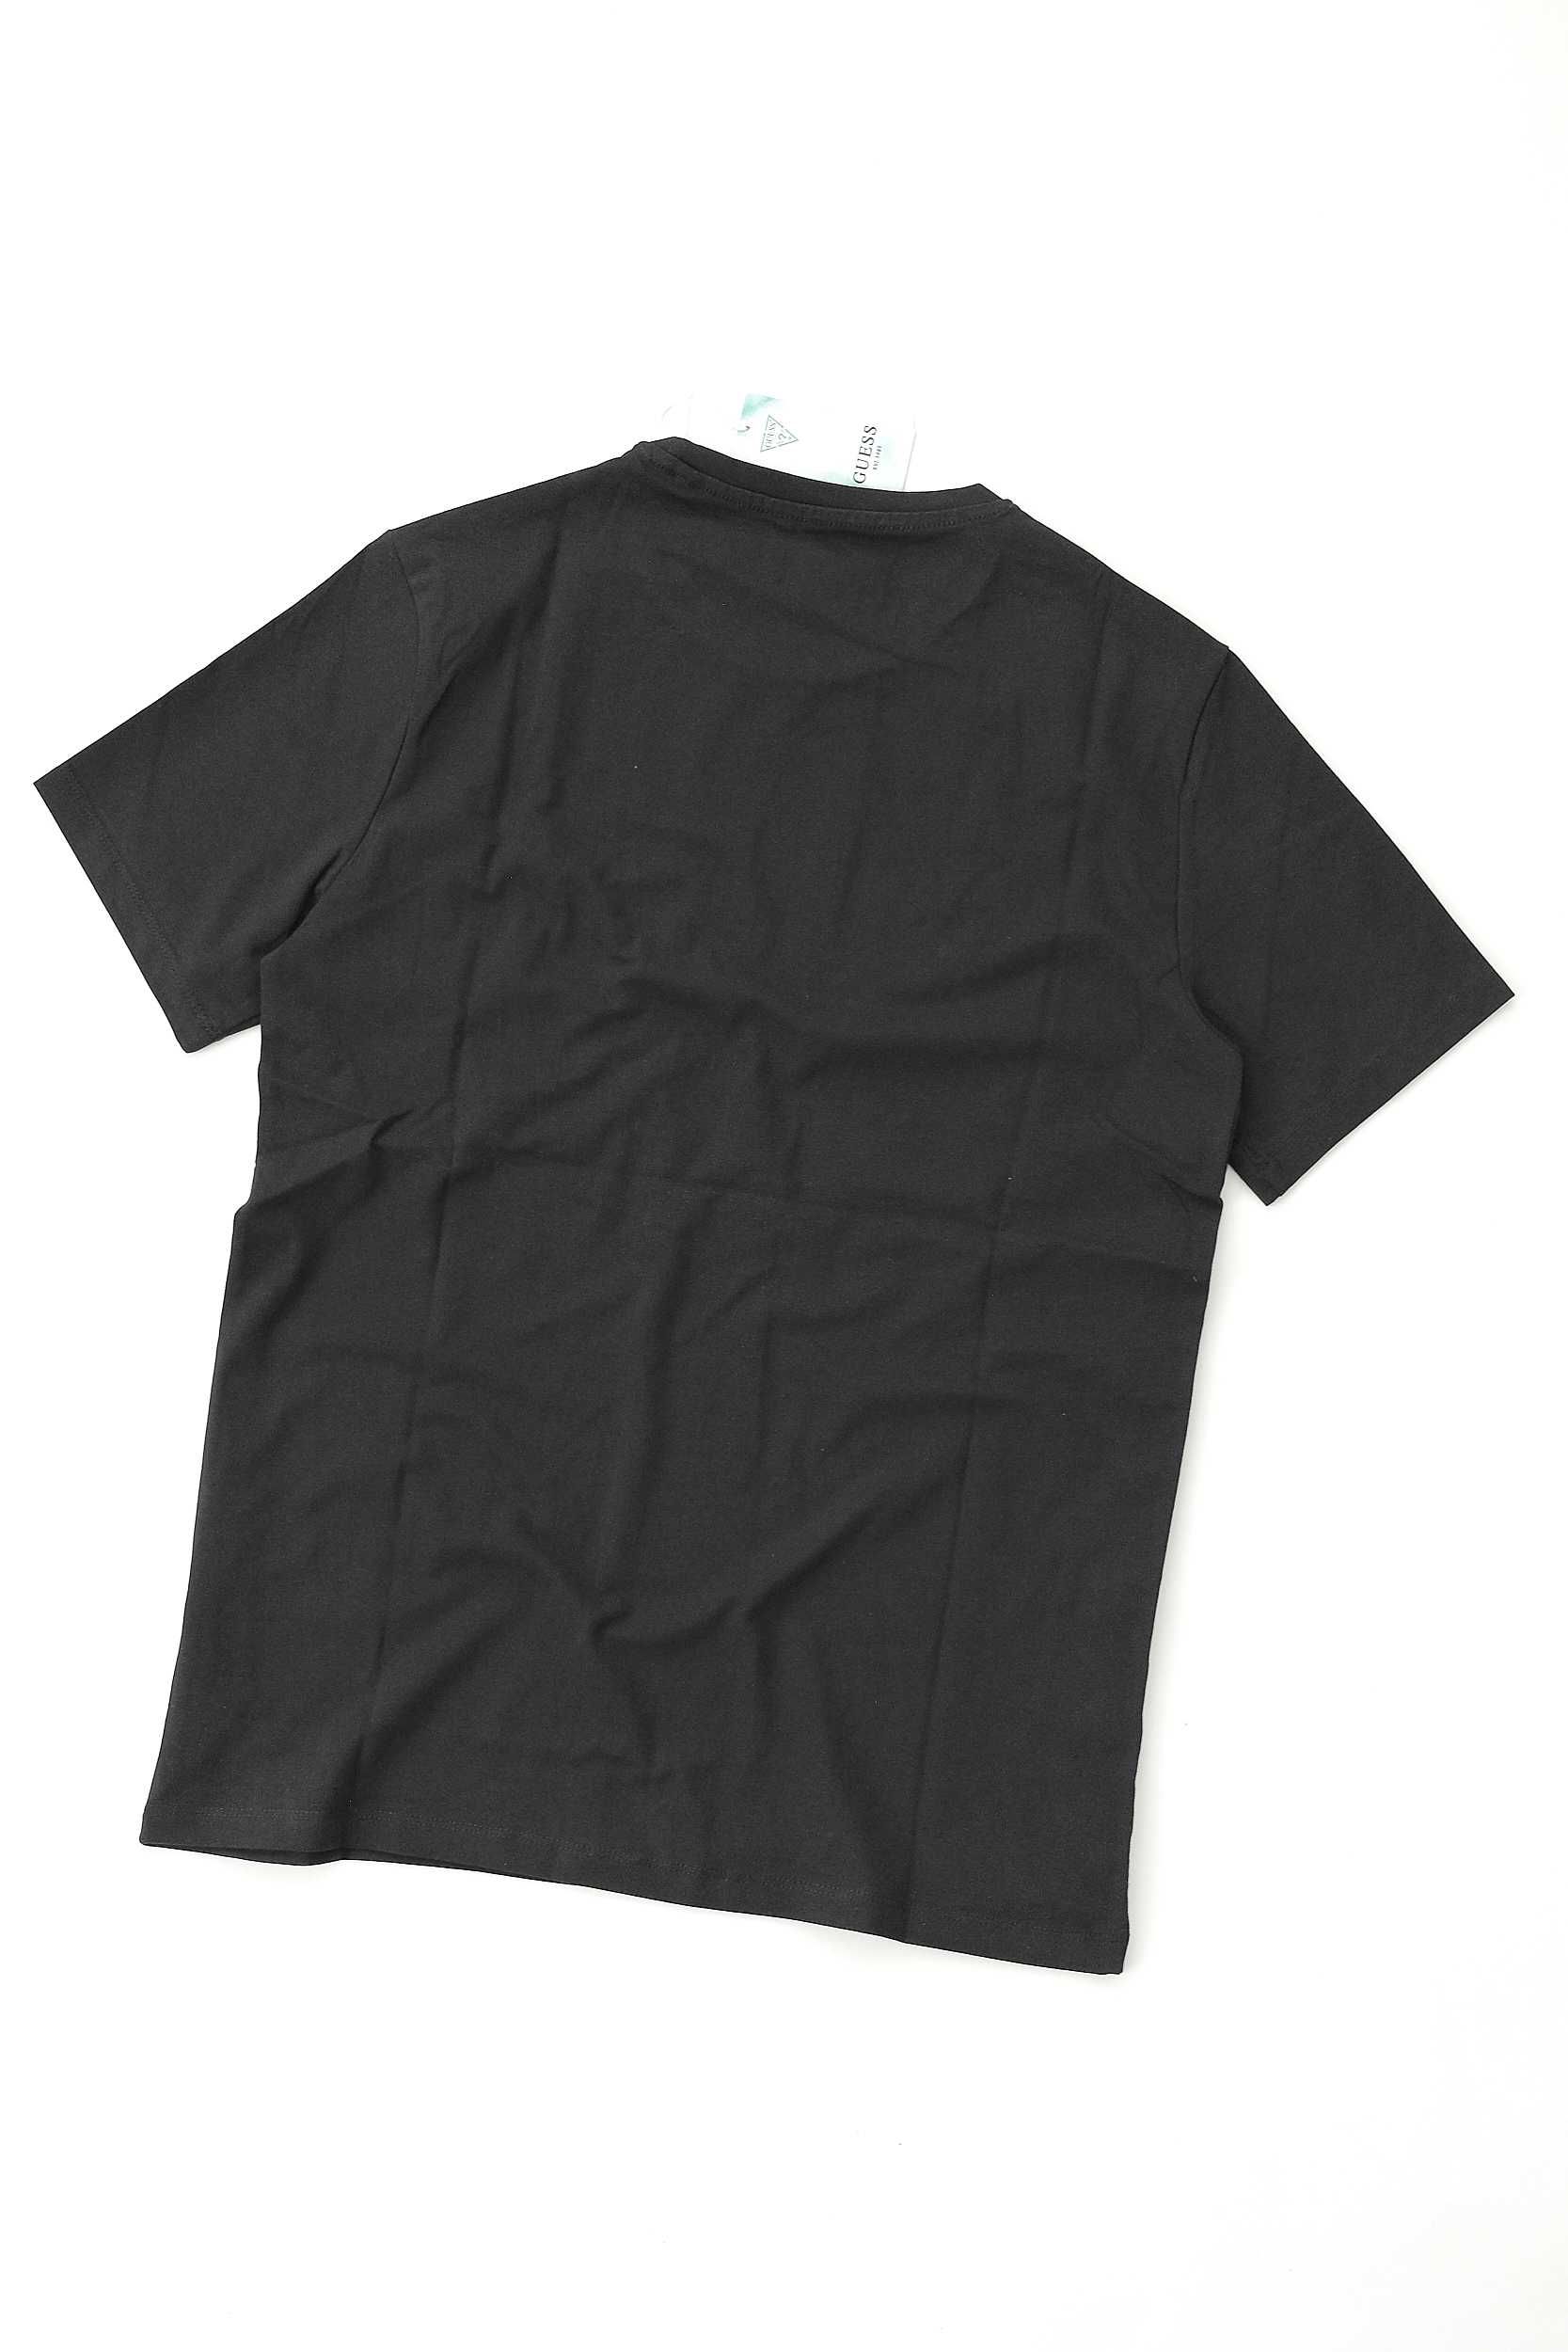 ПРОМО GUESS S/М/L размери-Оригинална черна тениска със щампа